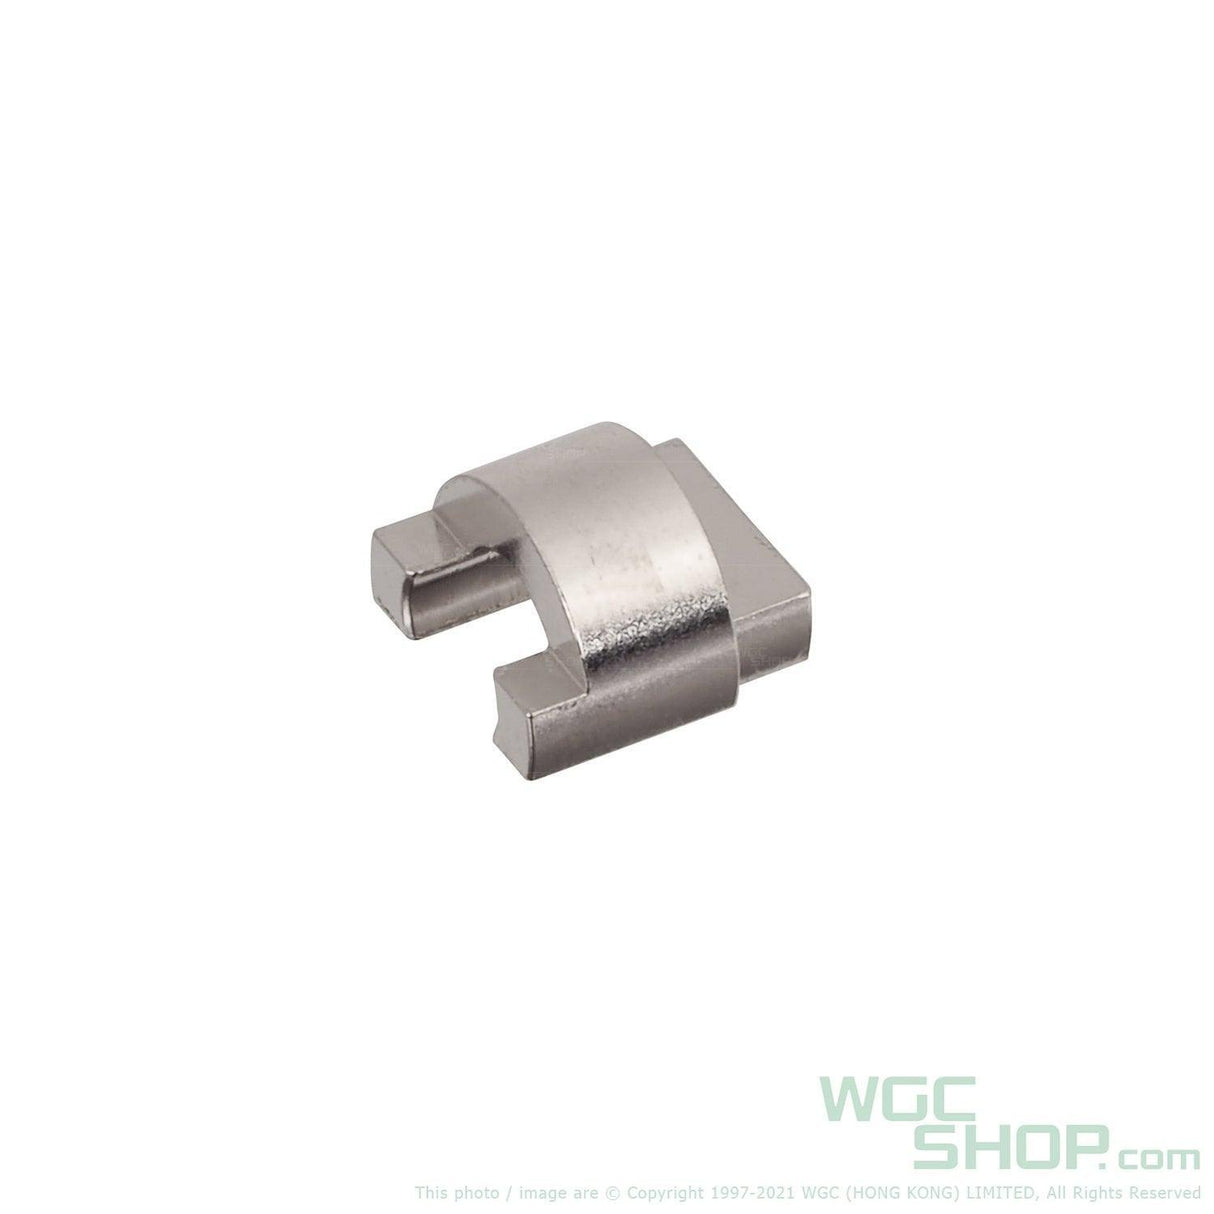 VFC Original Parts - M4 / HK416 GBB Nozzle Fix Button ( VG20CLR0U0 ) - WGC Shop